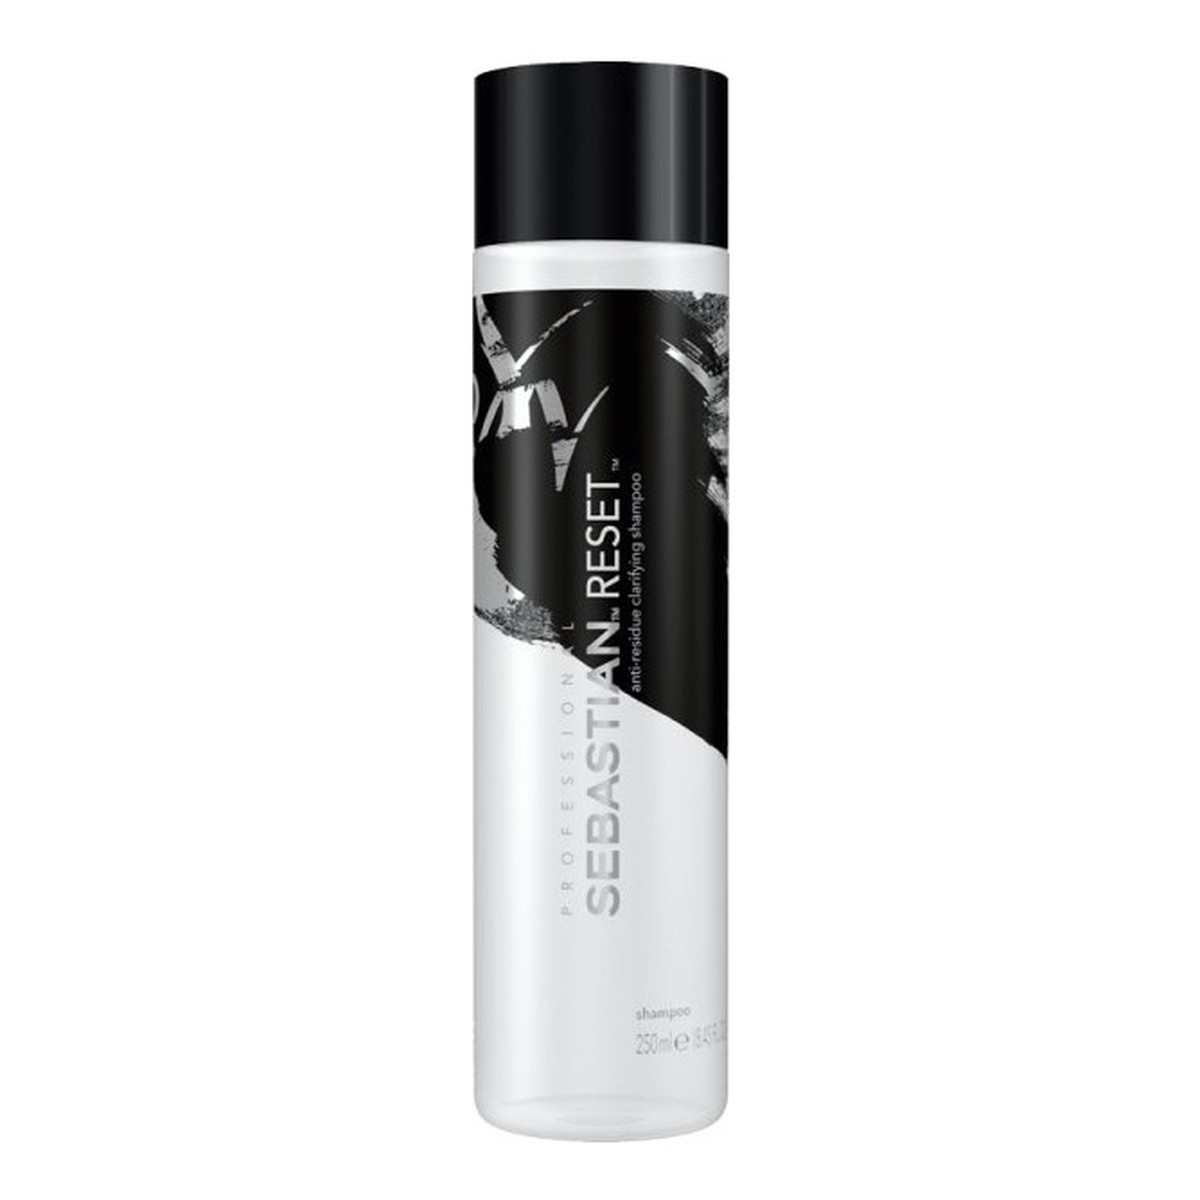 Sebastian Professional Reset shampoo oczyszczający szampon do włosów 250ml